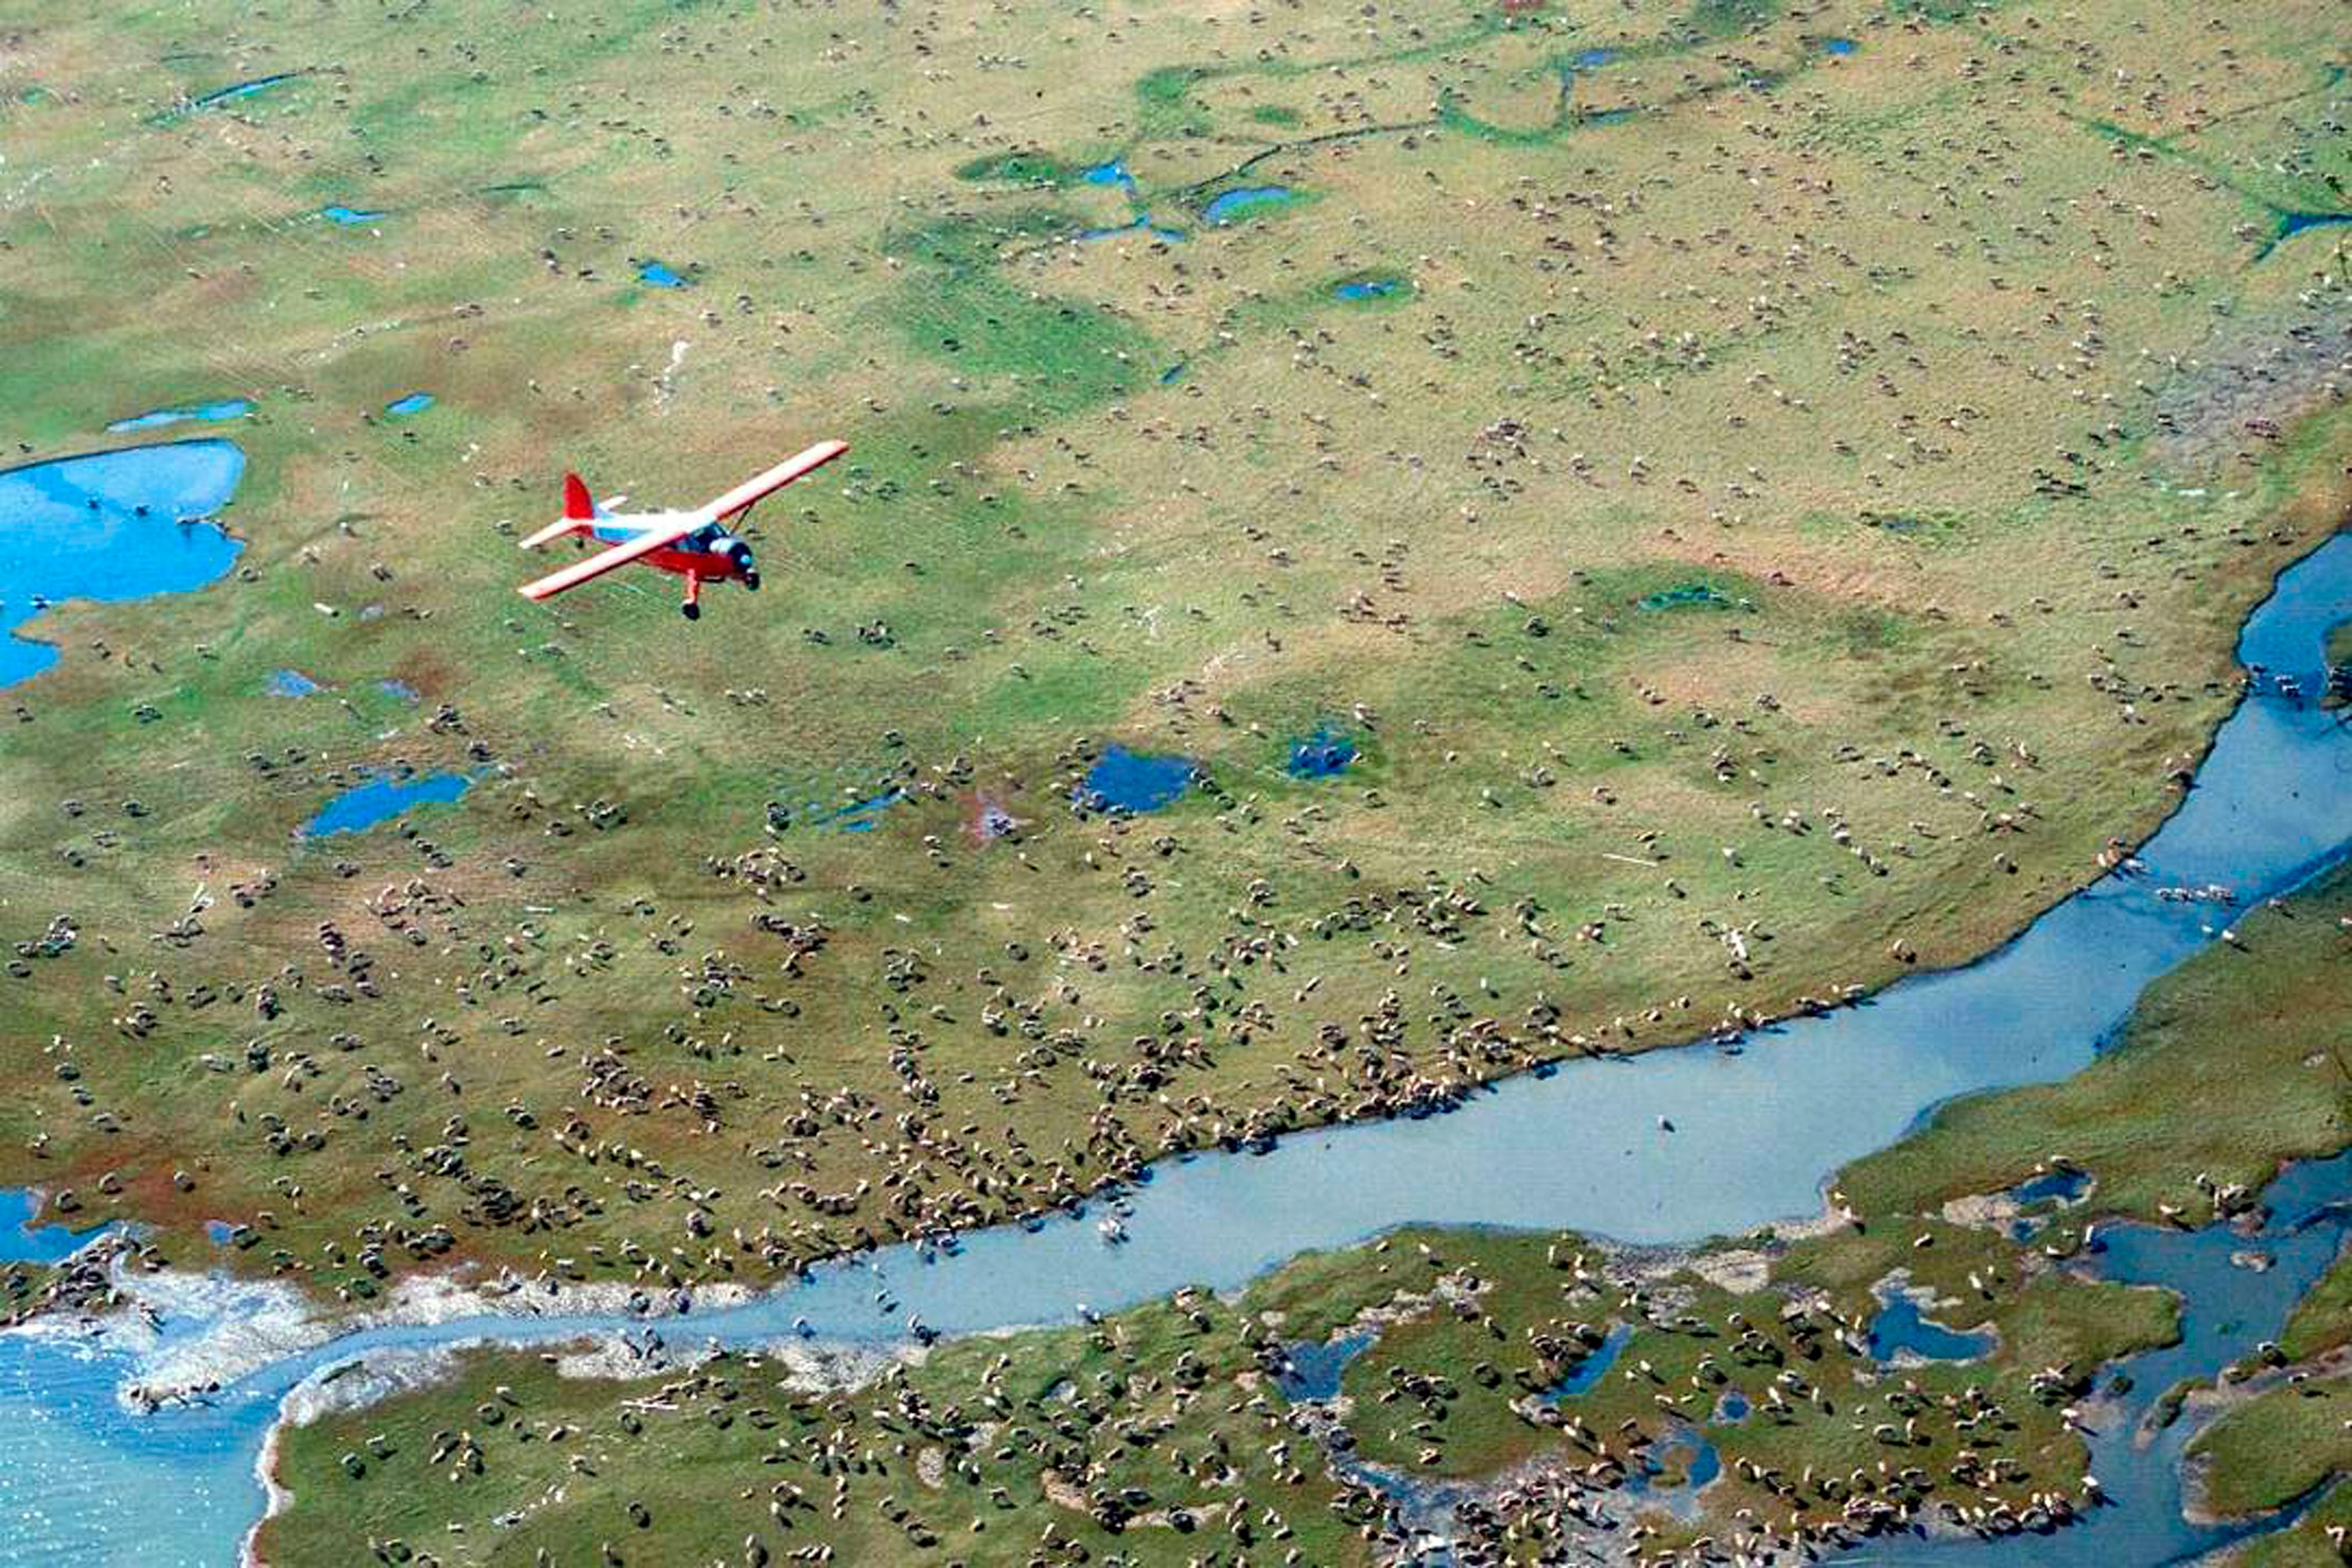 طائرة تحلق فوق الوعل من قطيع كاريبو النيص على السهل الساحلي لمحمية القطب الشمالي الوطنية للحياة البرية في شمال شرق ألاسكا.